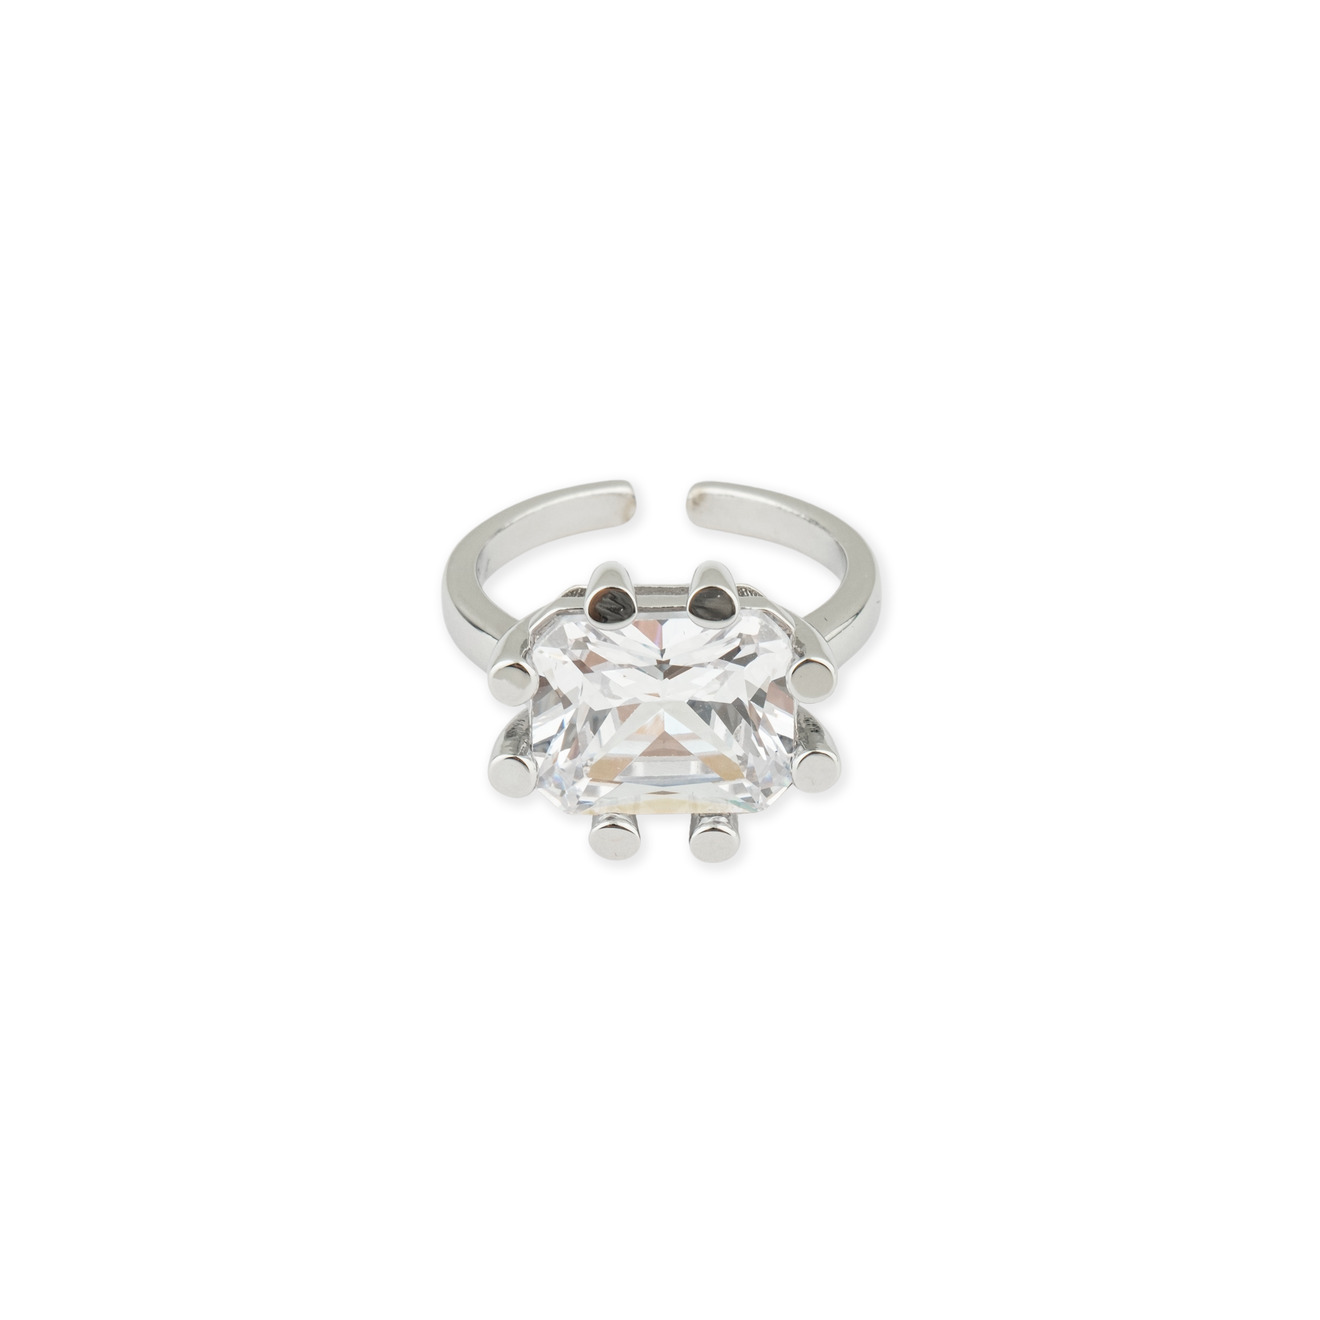 Herald Percy Серебристое кольцо с кристаллом herald percy серебристое незамкнутое кольцо с кристаллами